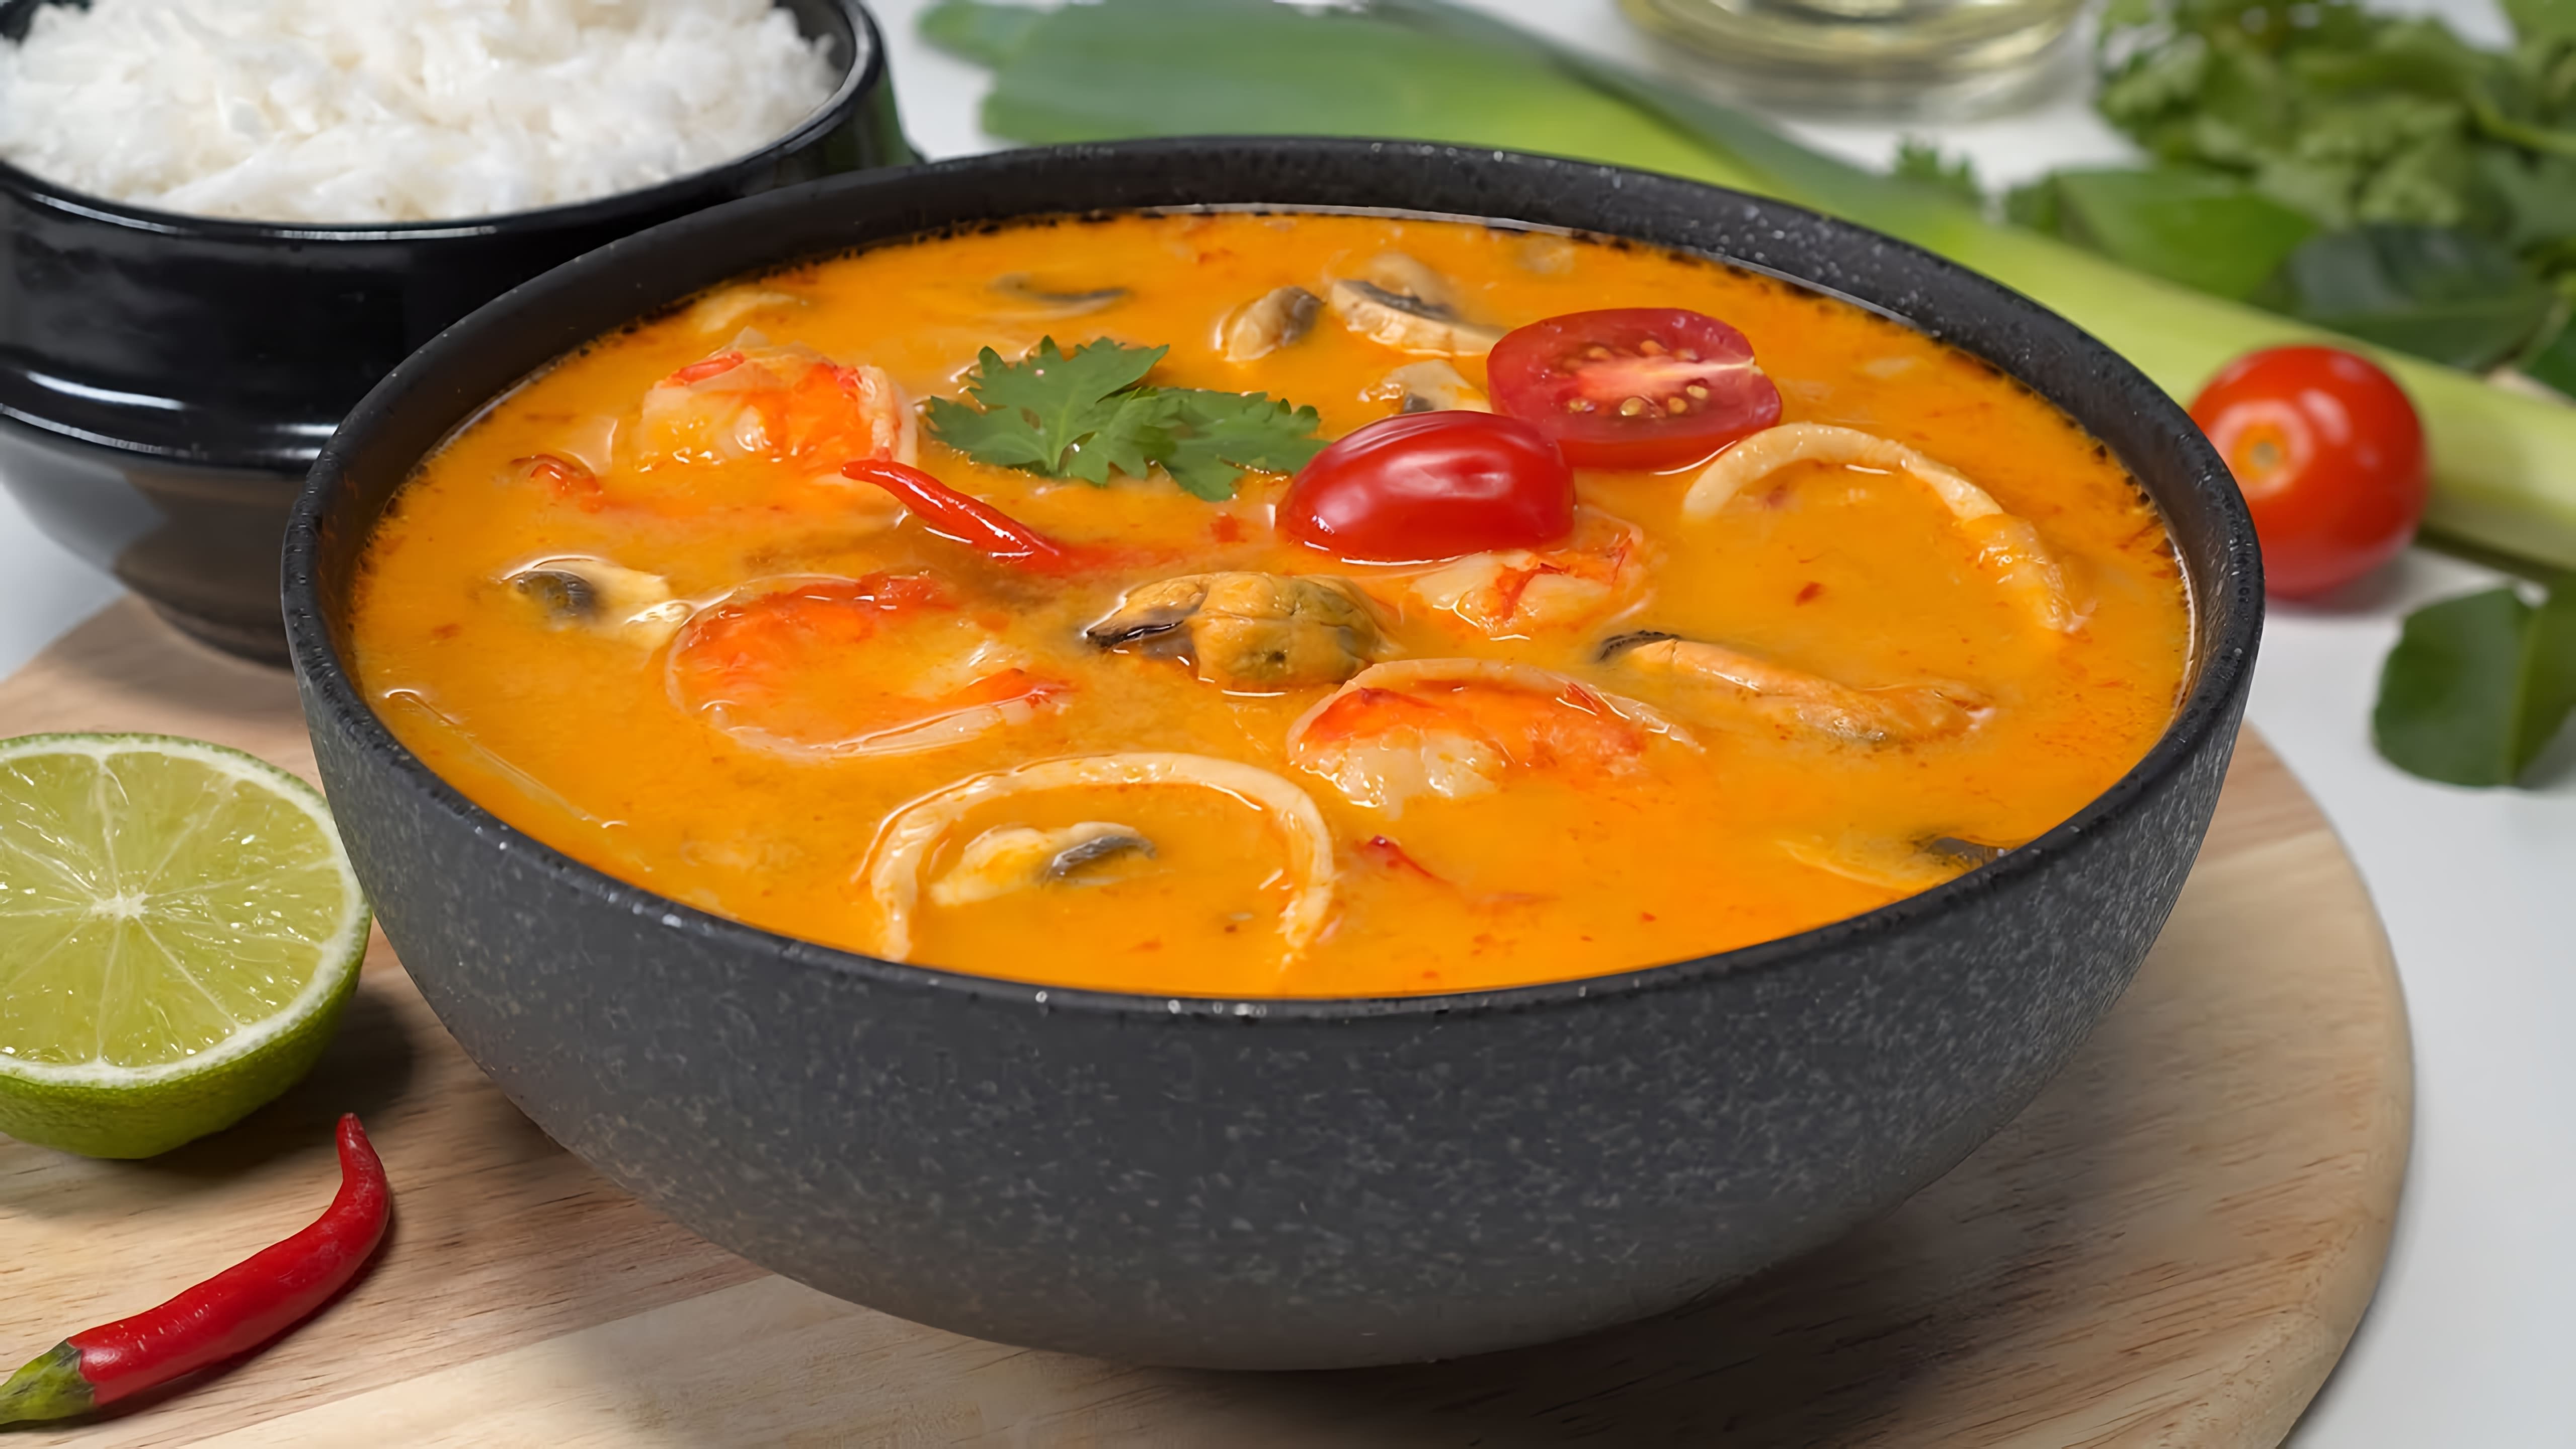 В этом видео демонстрируется рецепт приготовления знаменитого тайского супа "Том Ям"